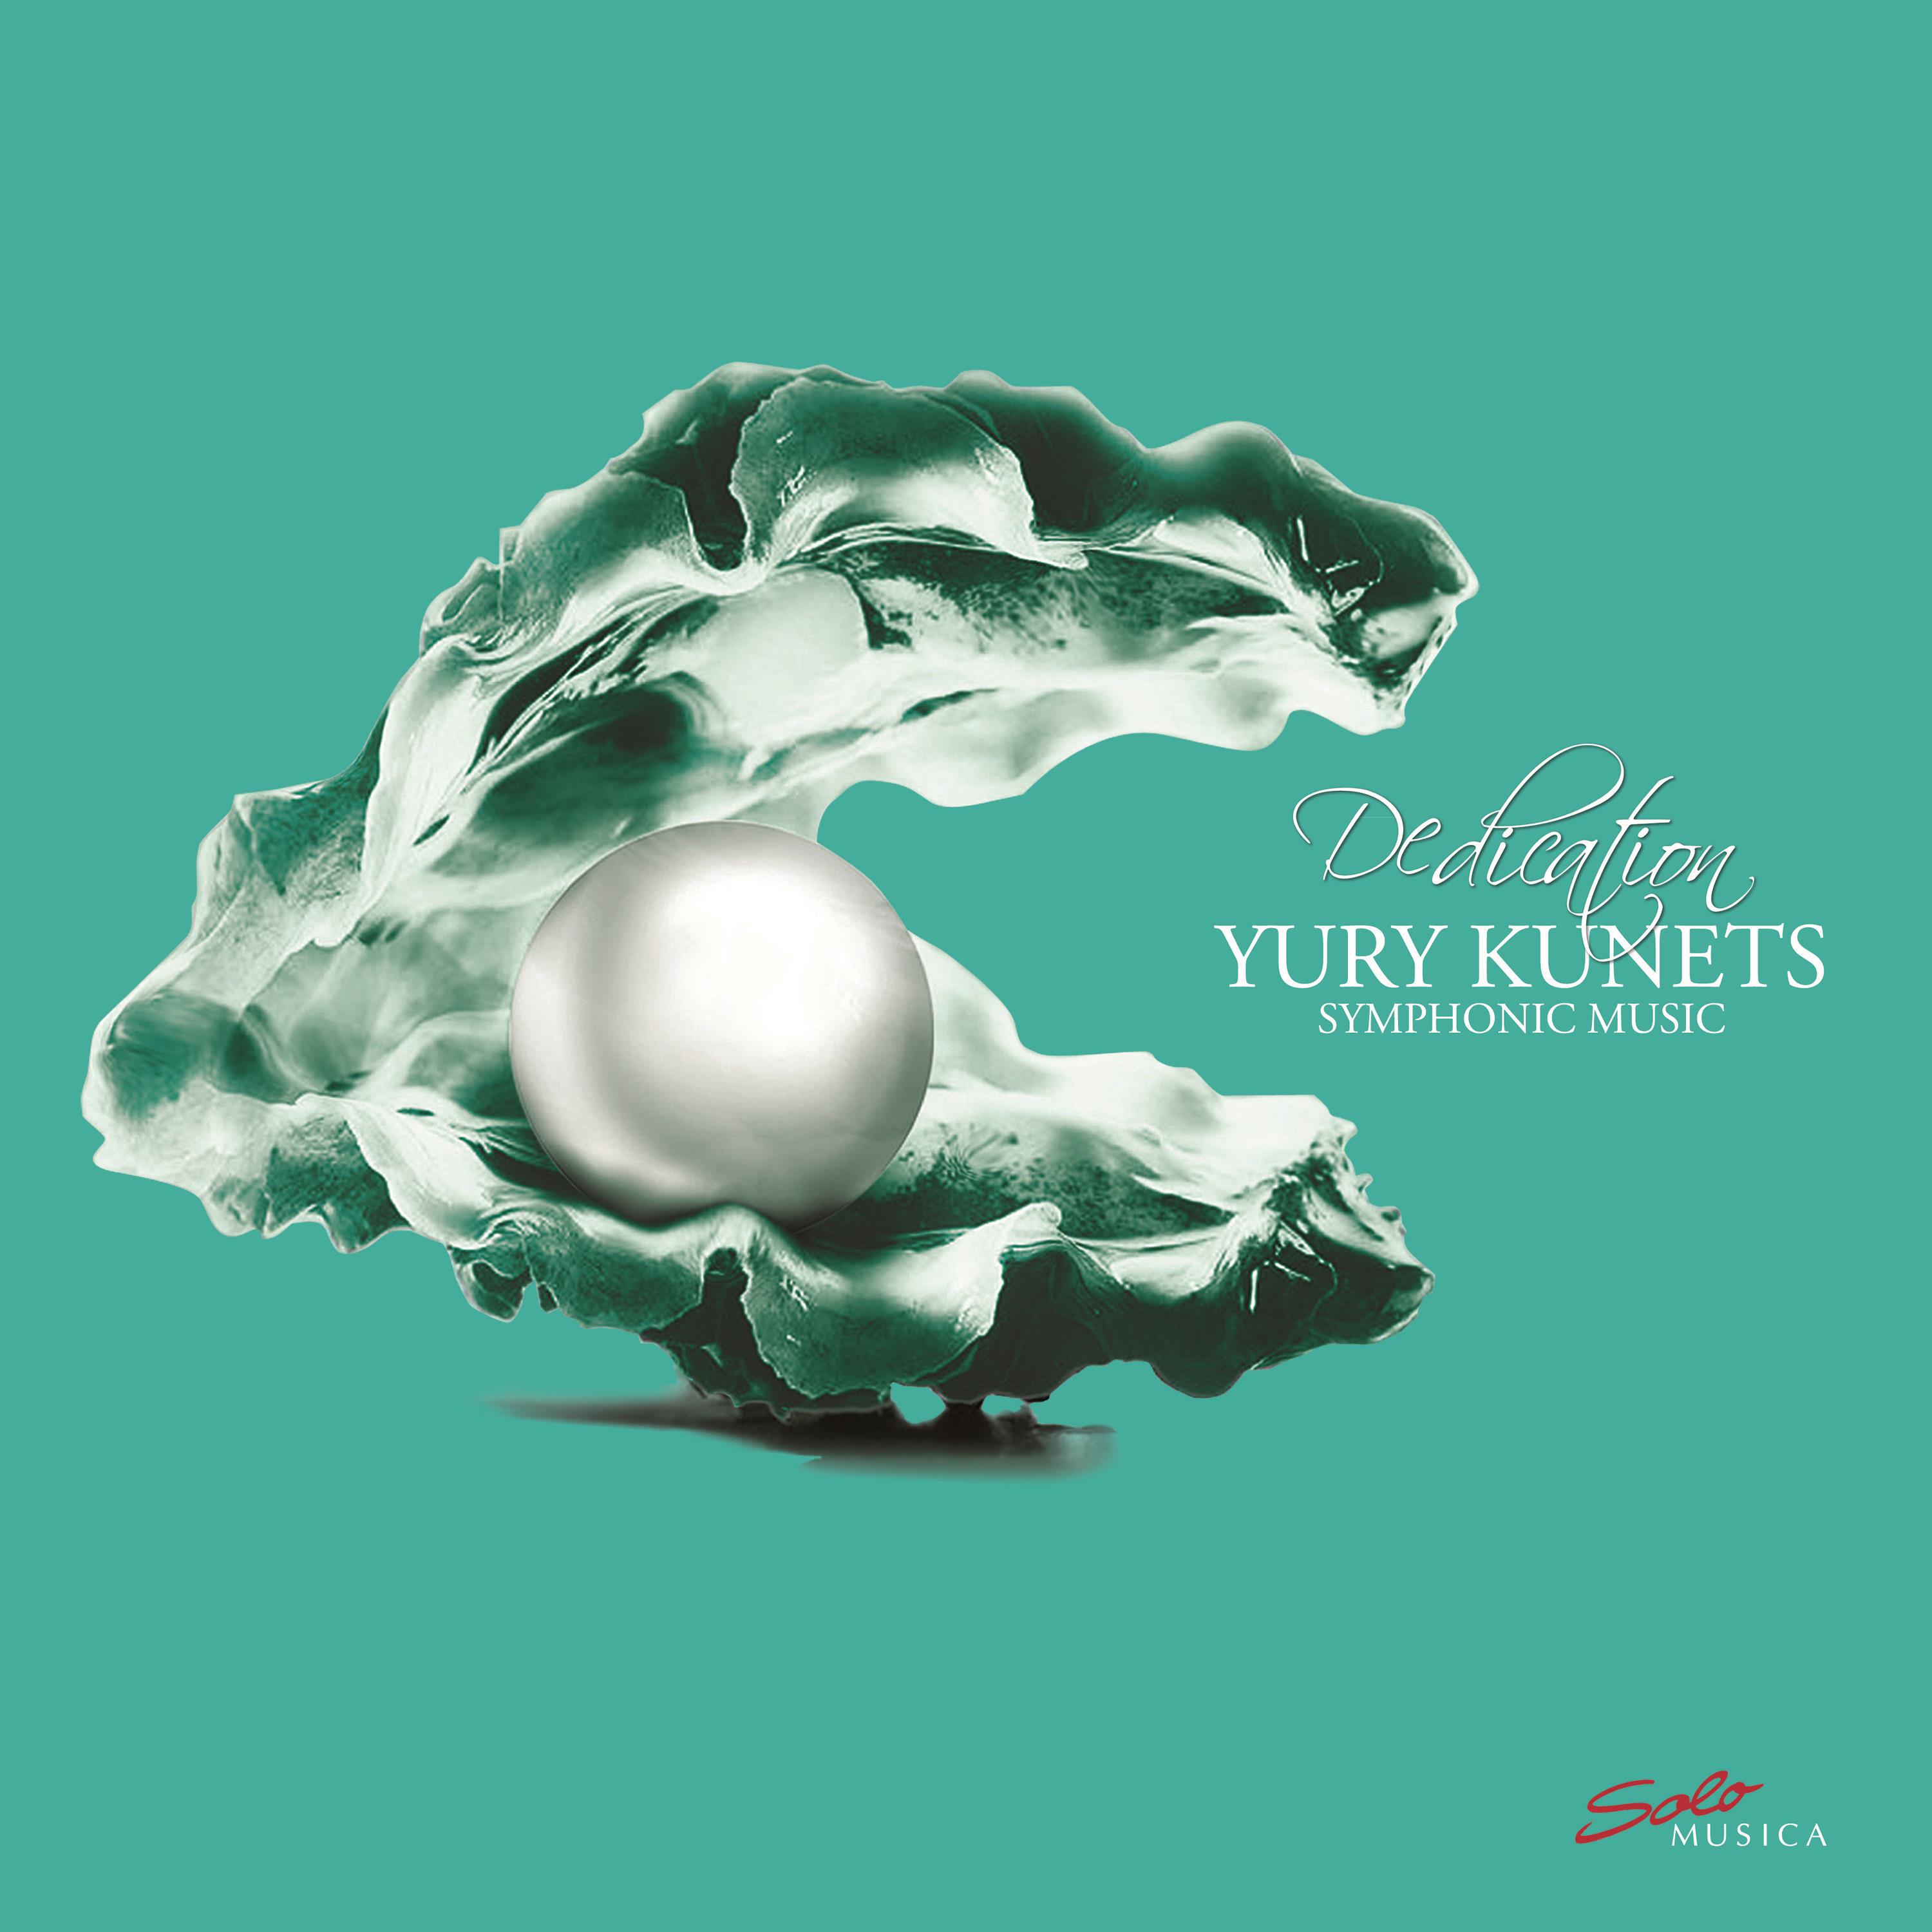 Dedication: Yury Kunets  Symphonic Music